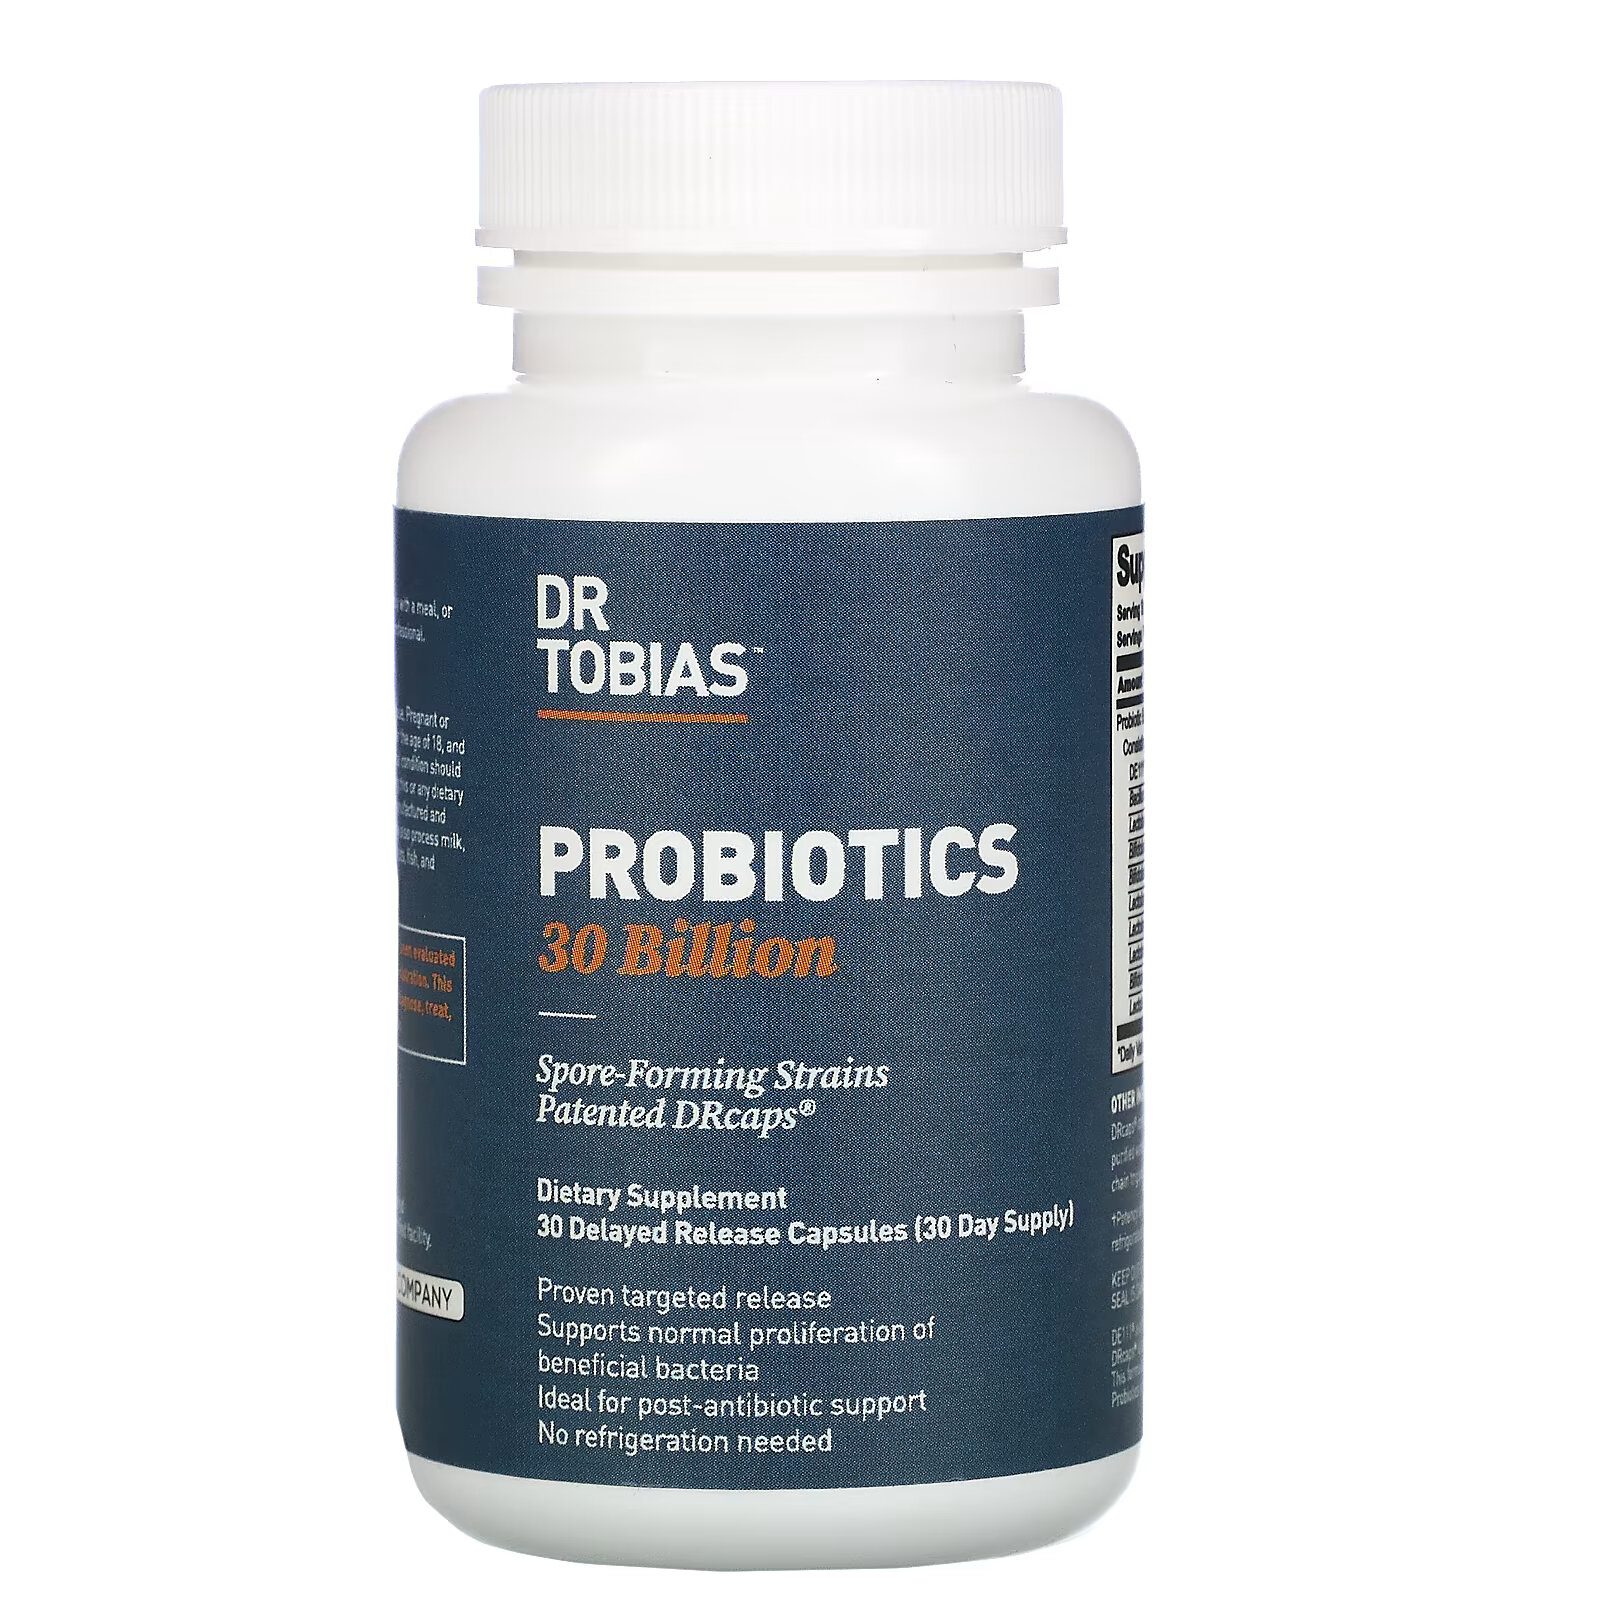 Dr. Tobias, пробиотик, 30 млрд КОЕ, 30 капсул с отсроченным высвобождением nature s way fortify optima пробиотик для женщин 50 млрд 30 растительных компонентов с отсроченным высвобождением капсул